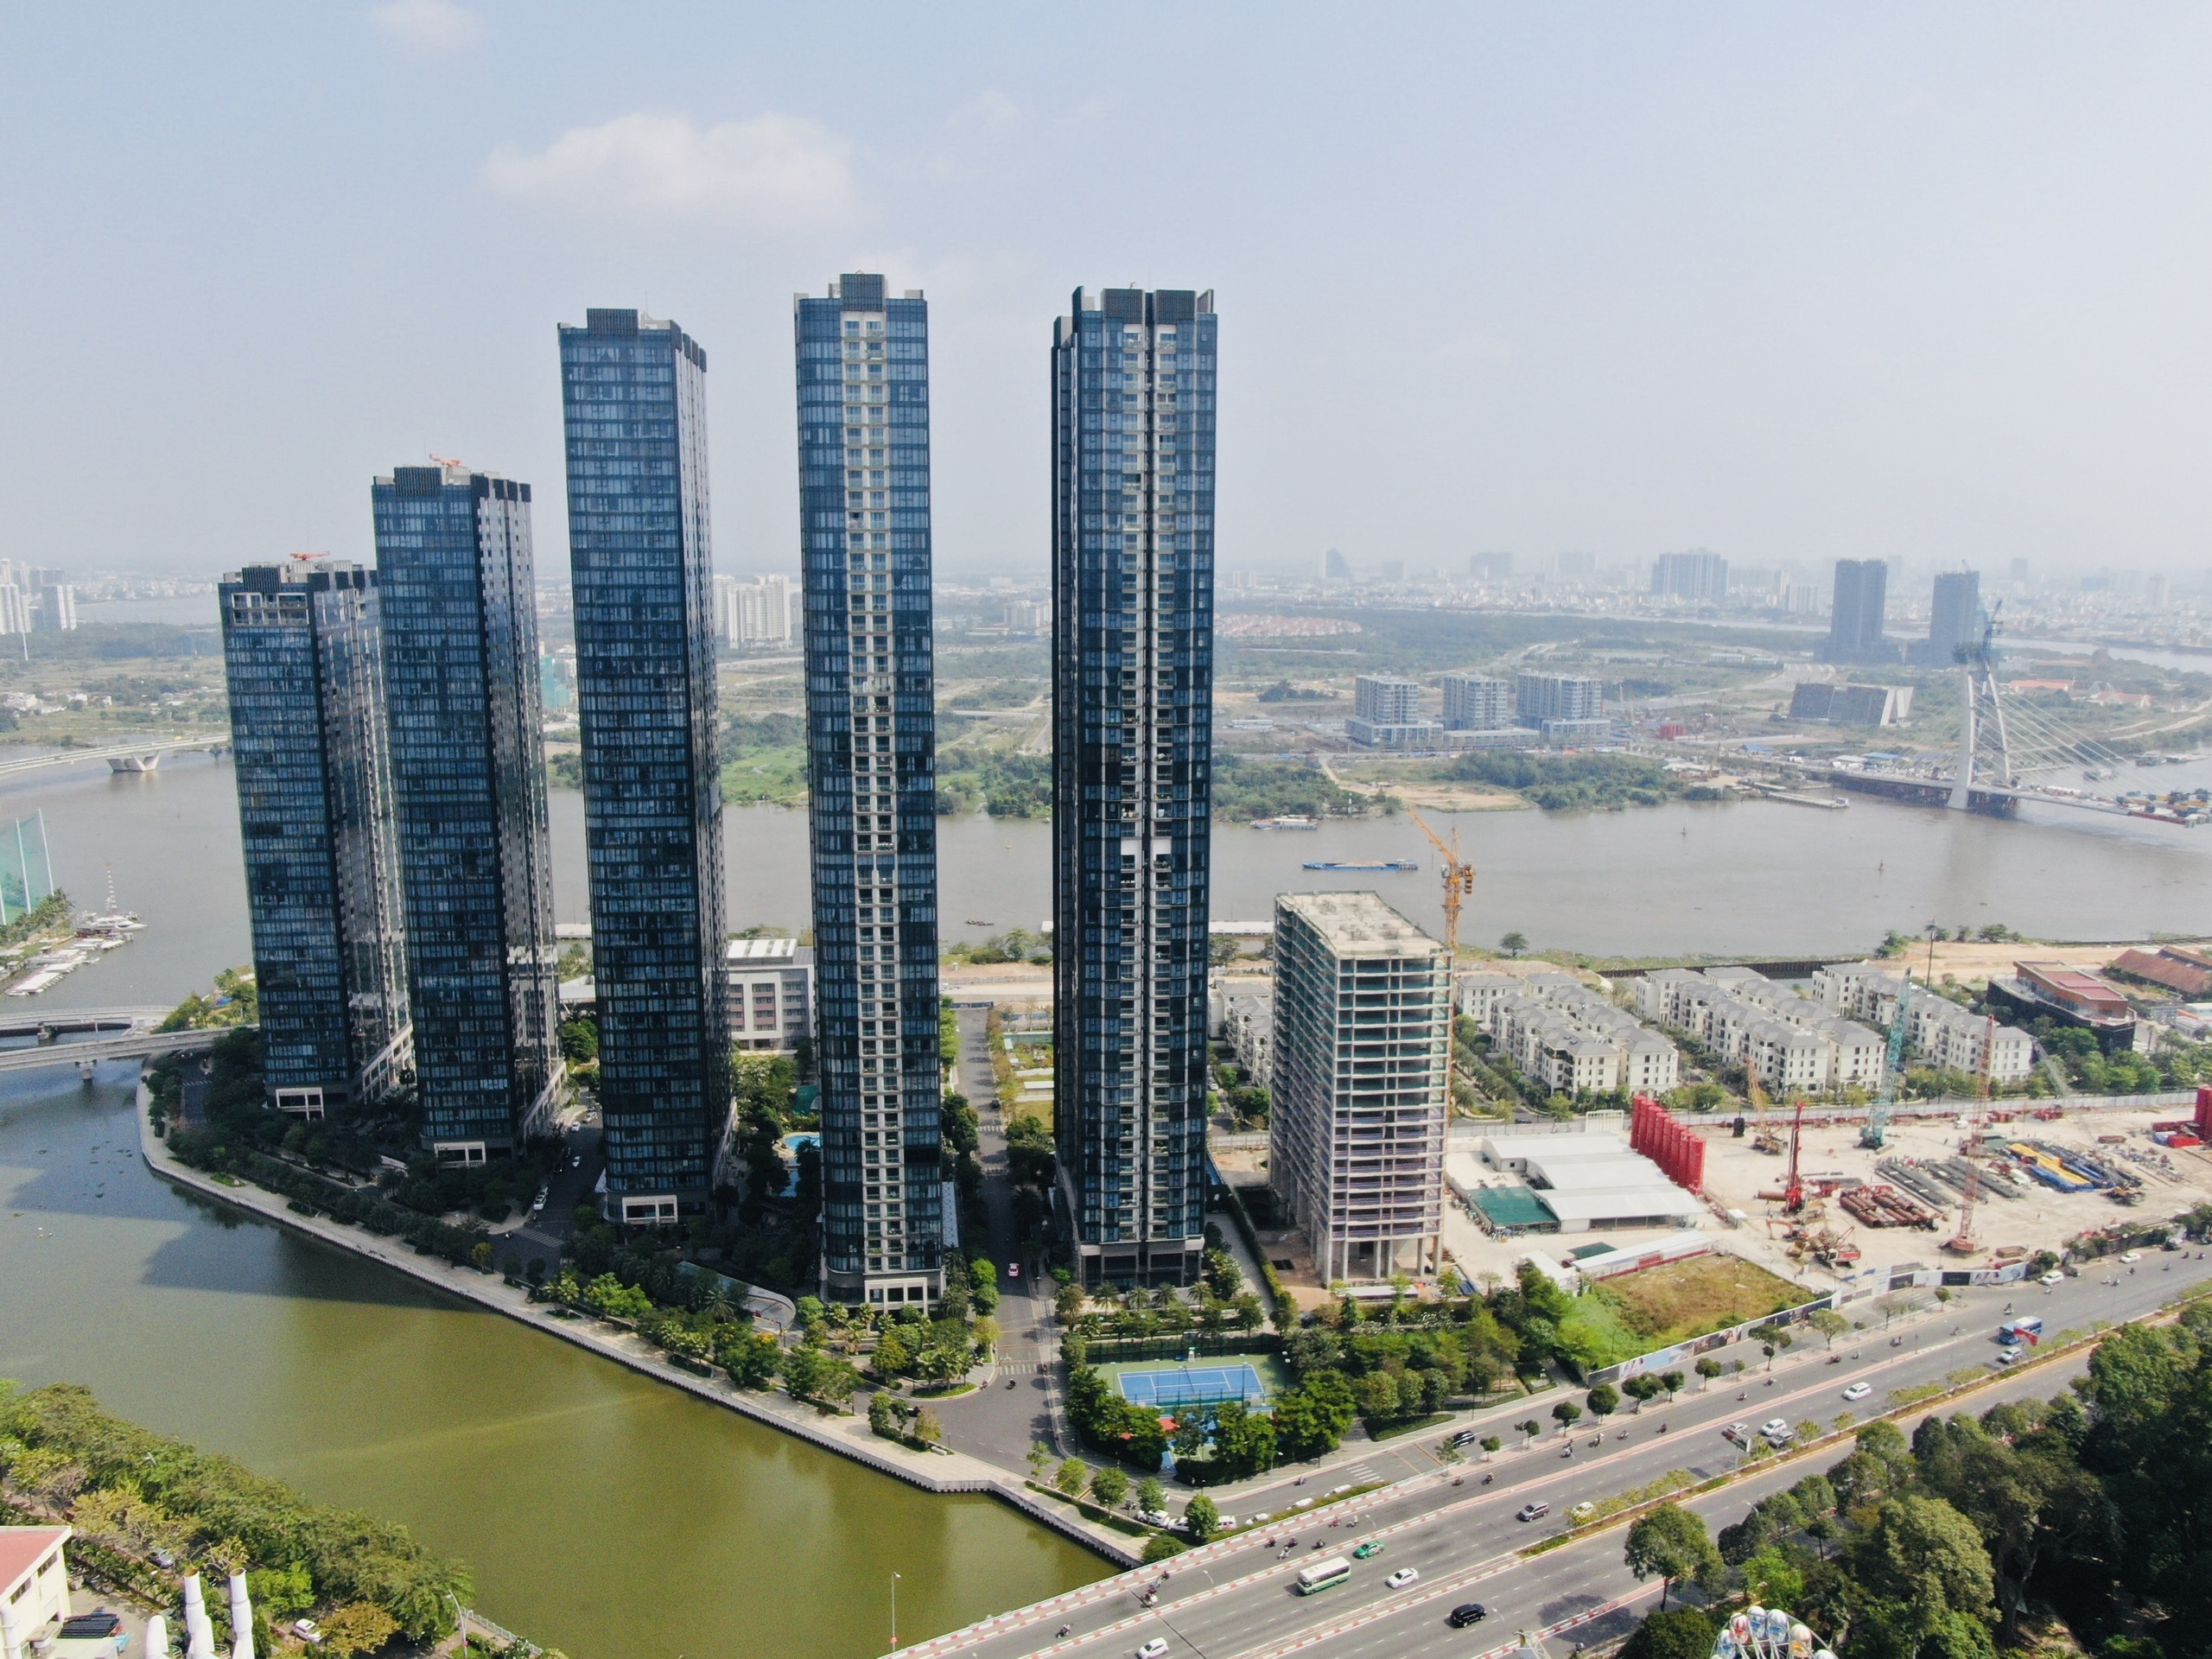 Những lý do khiến bạn nên đầu tư dự án Grand Marina Saigon 